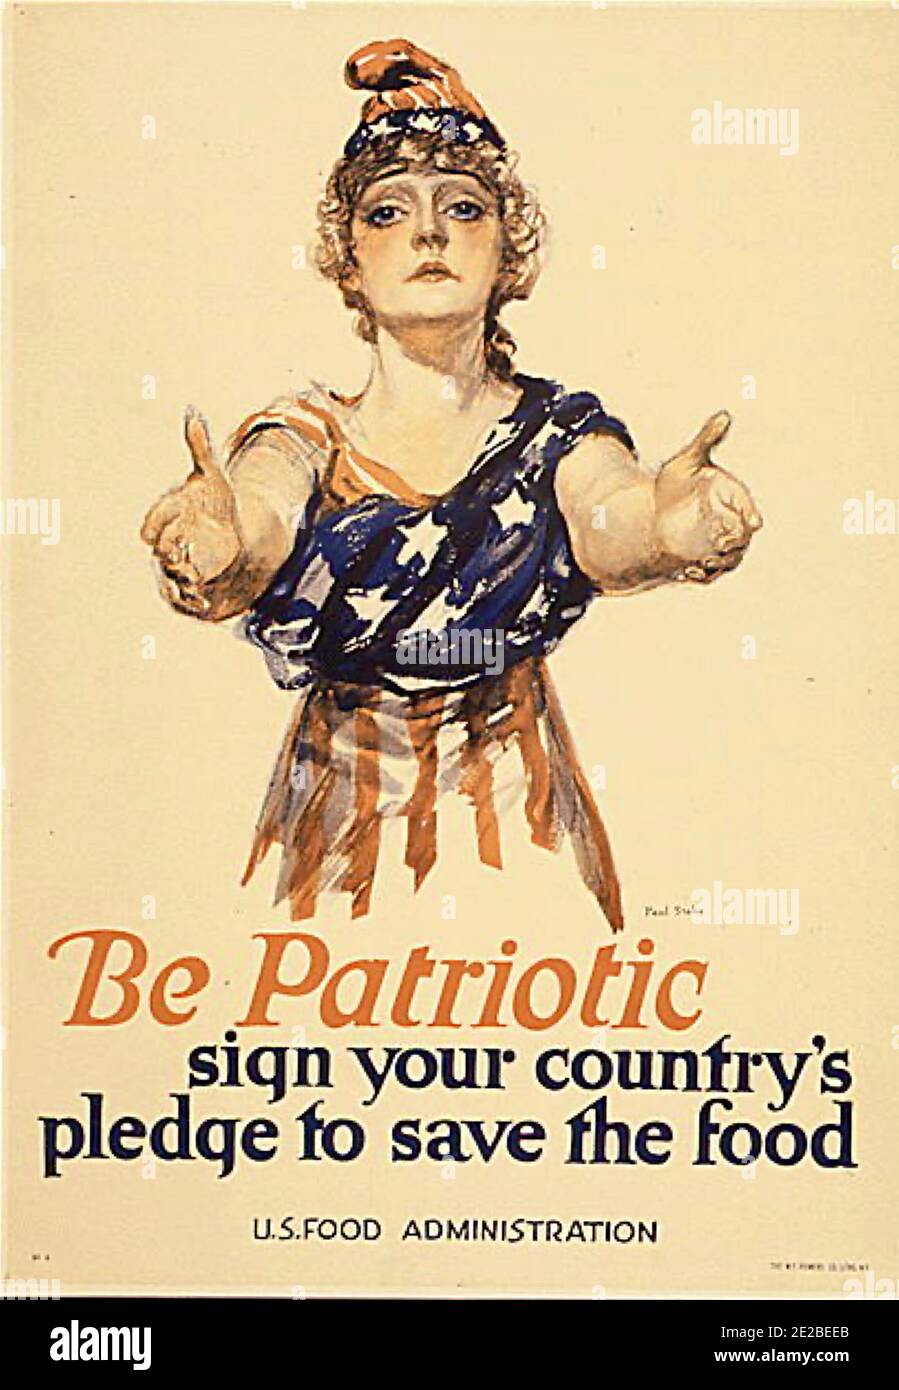 Sei patriotisch - unterzeichne das Versprechen deines Landes, das Essen zu retten. Öffentliches Informationsplakat der amerikanischen Regierung. Stockfoto